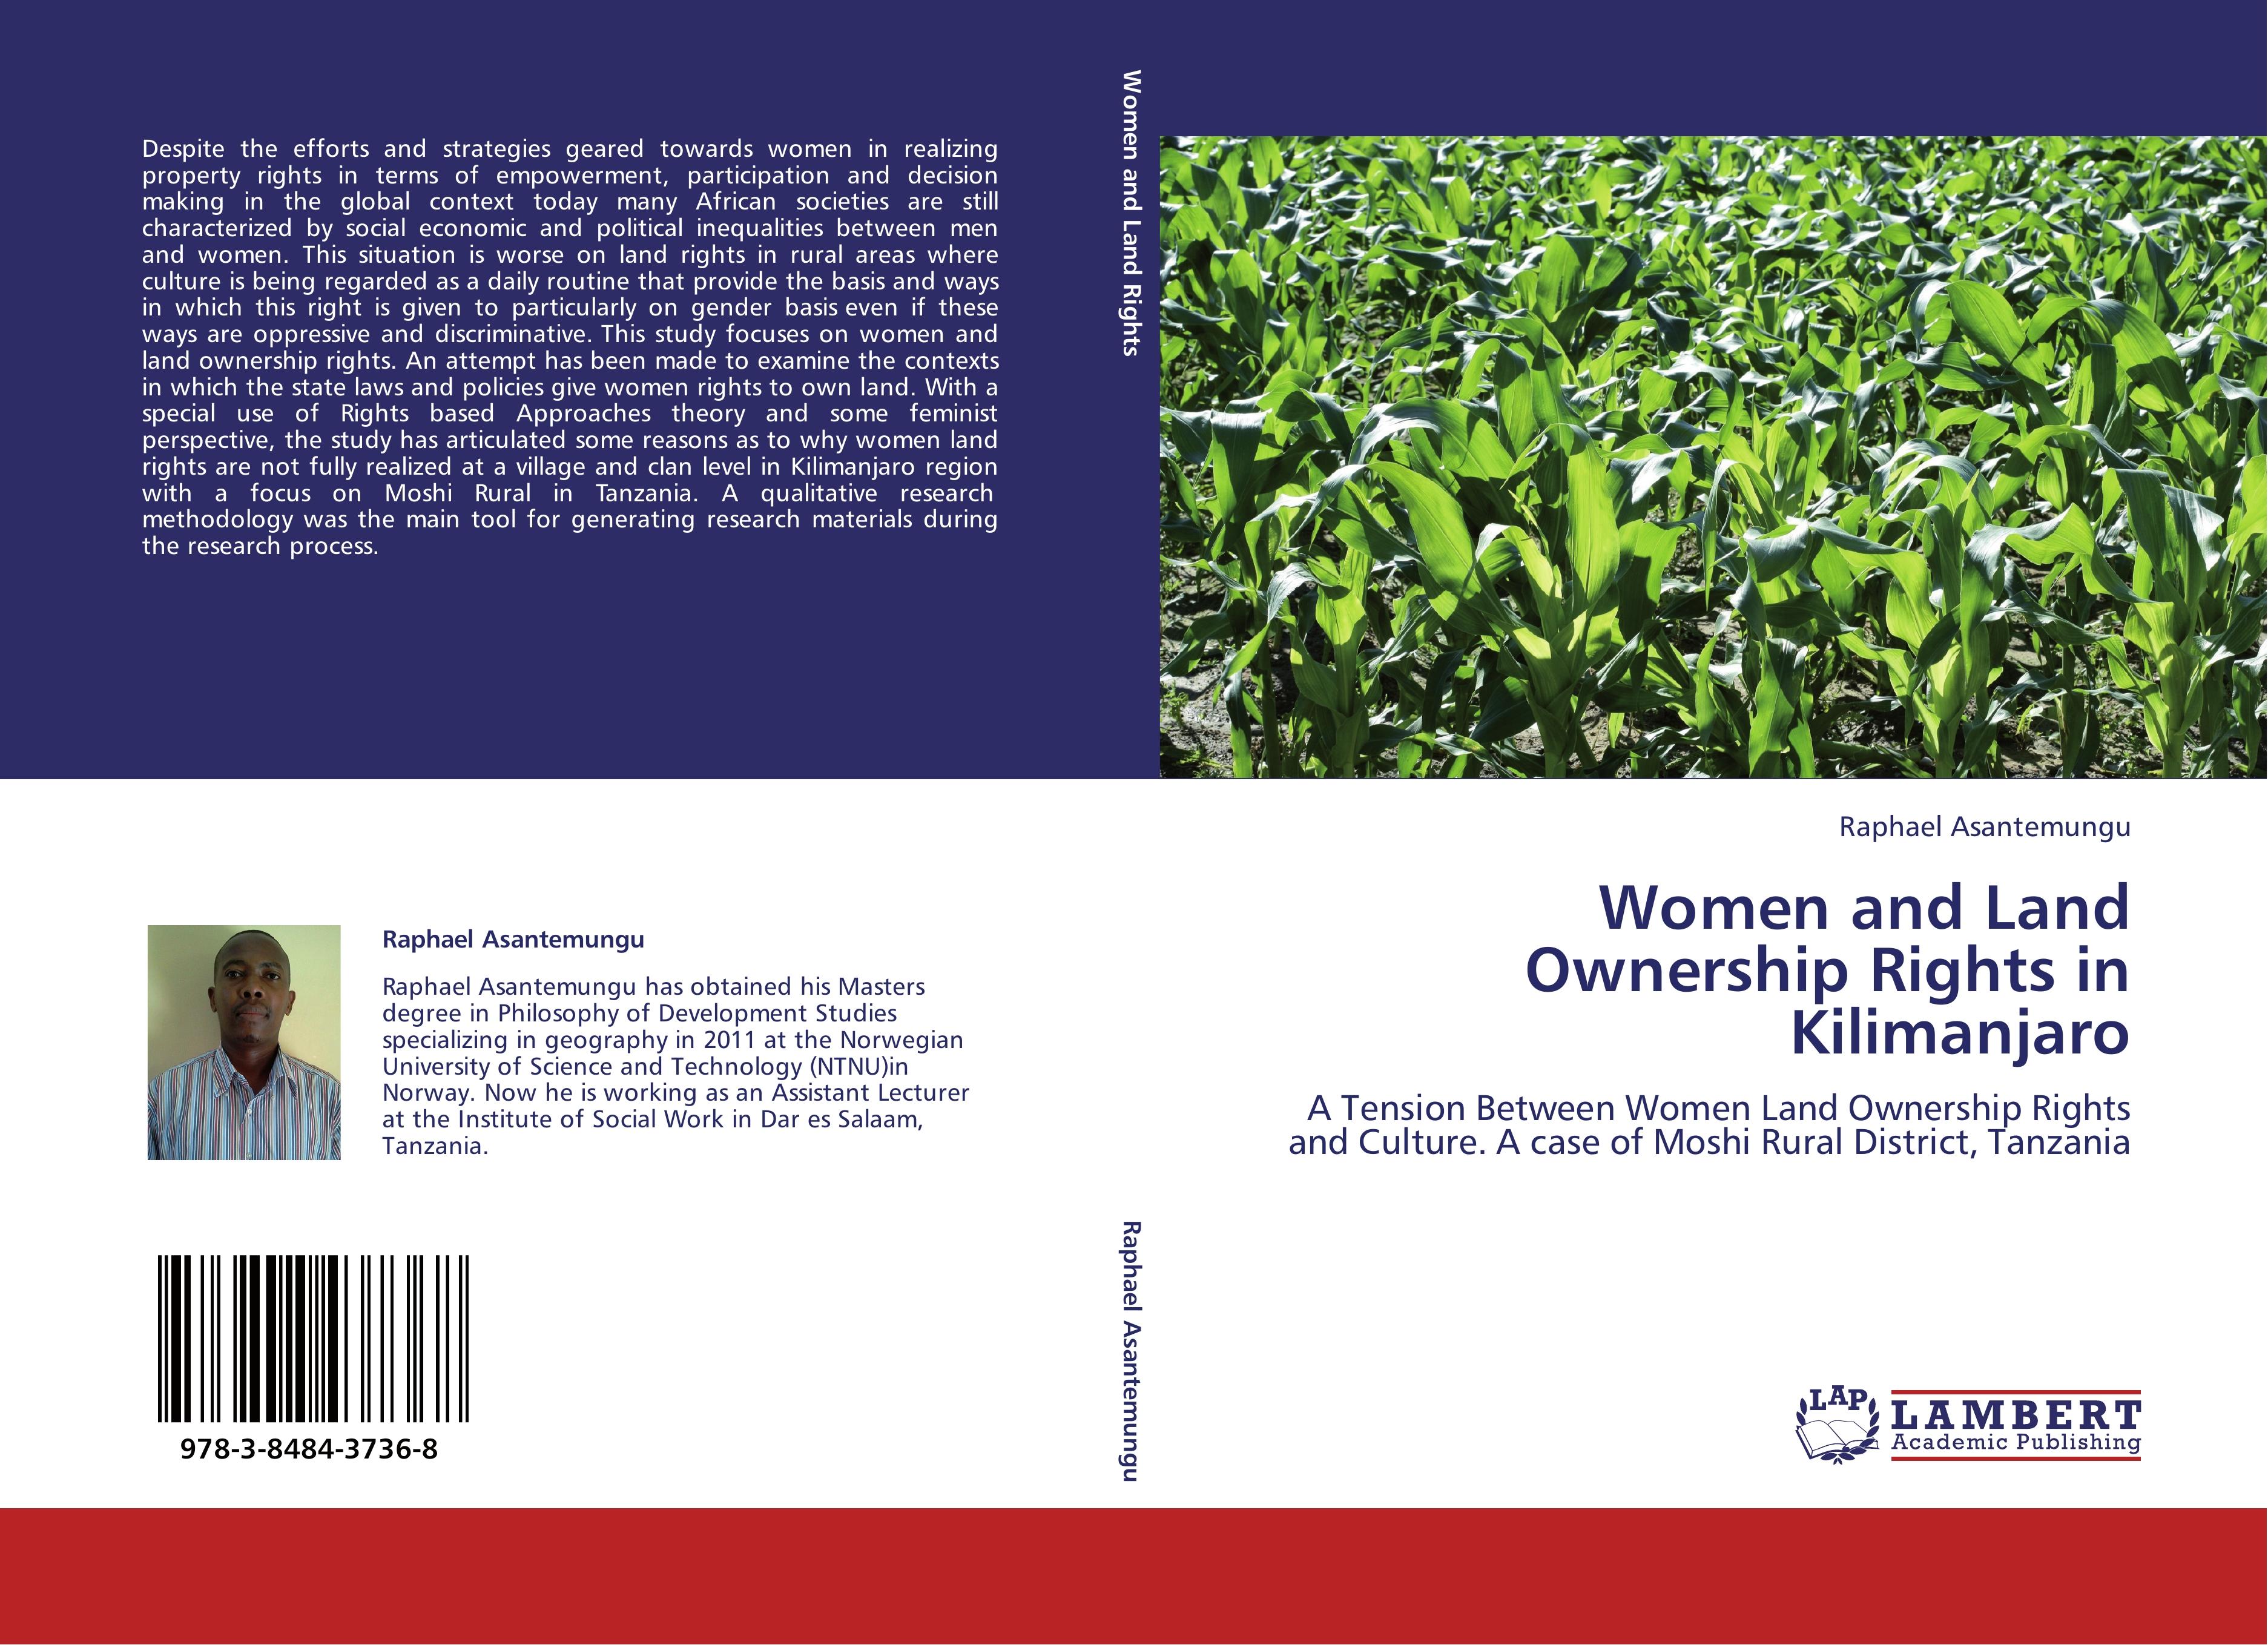 Women and Land Ownership Rights in Kilimanjaro - Raphael Asantemungu